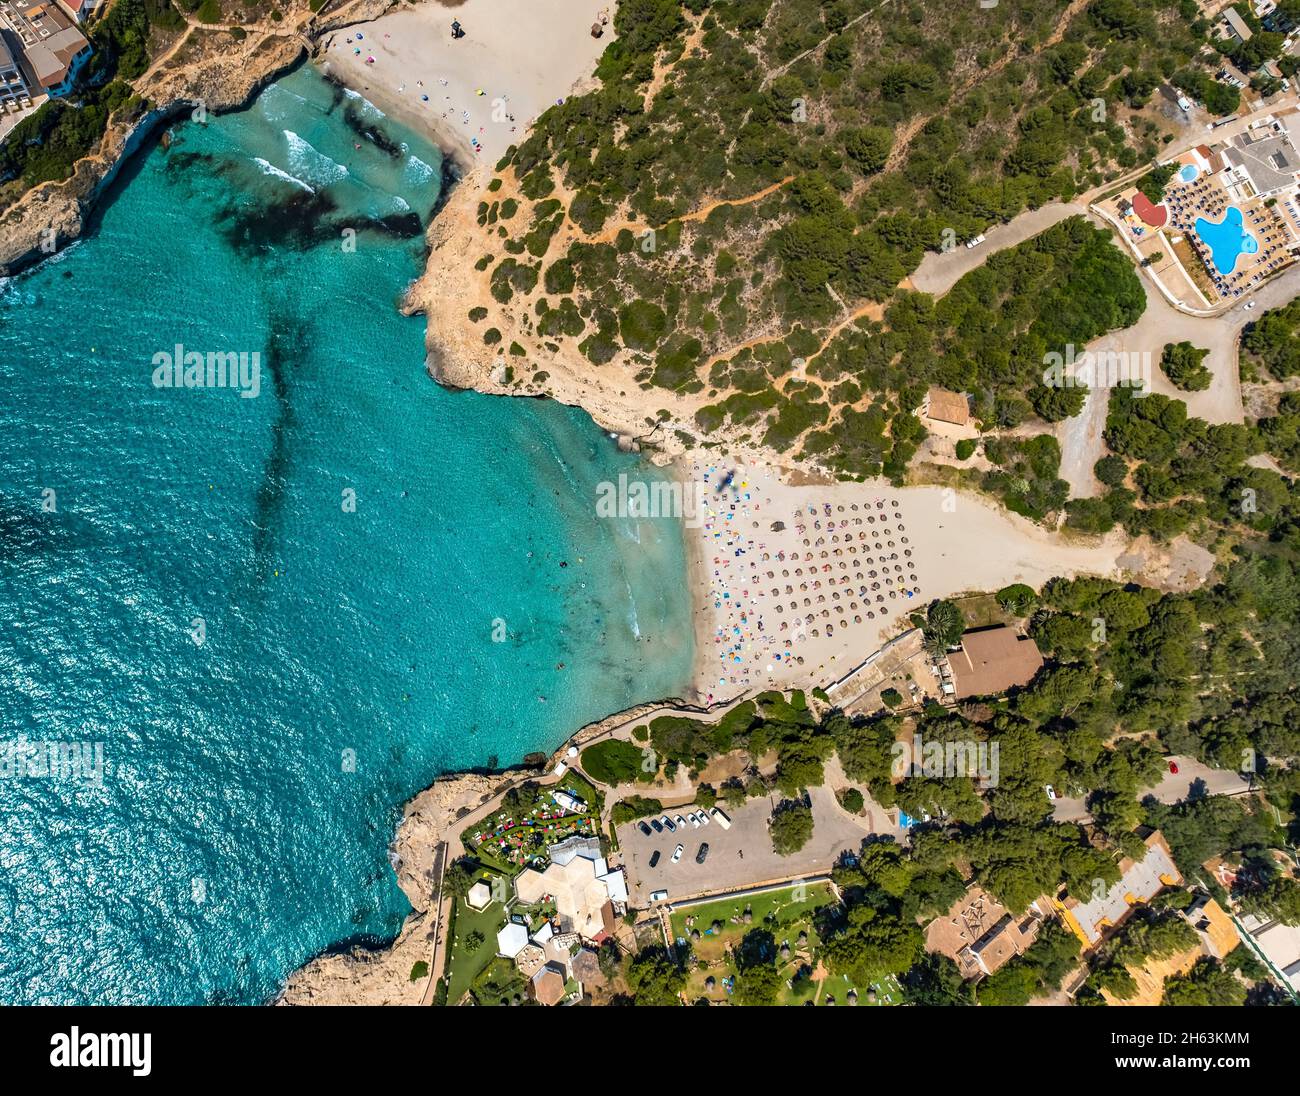 vue aérienne, platja de cala domingos plage, manacor, majorque, iles baléares, espagne Banque D'Images